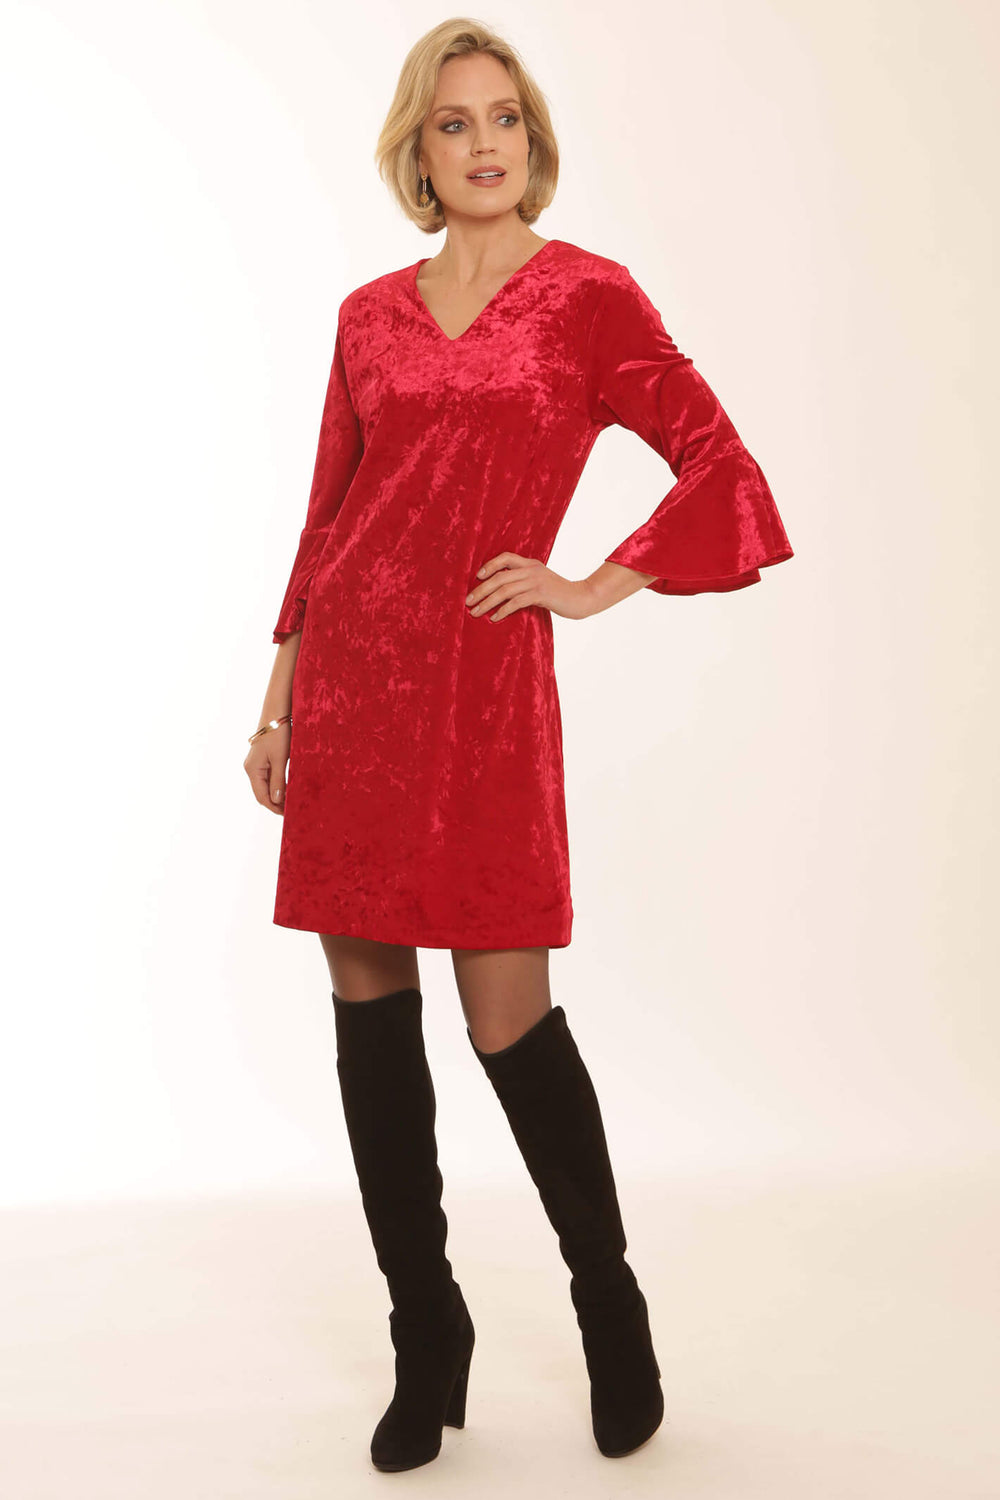 Pomodoro 52374 Red Velvet Bell Sleeve Dress - Dotique